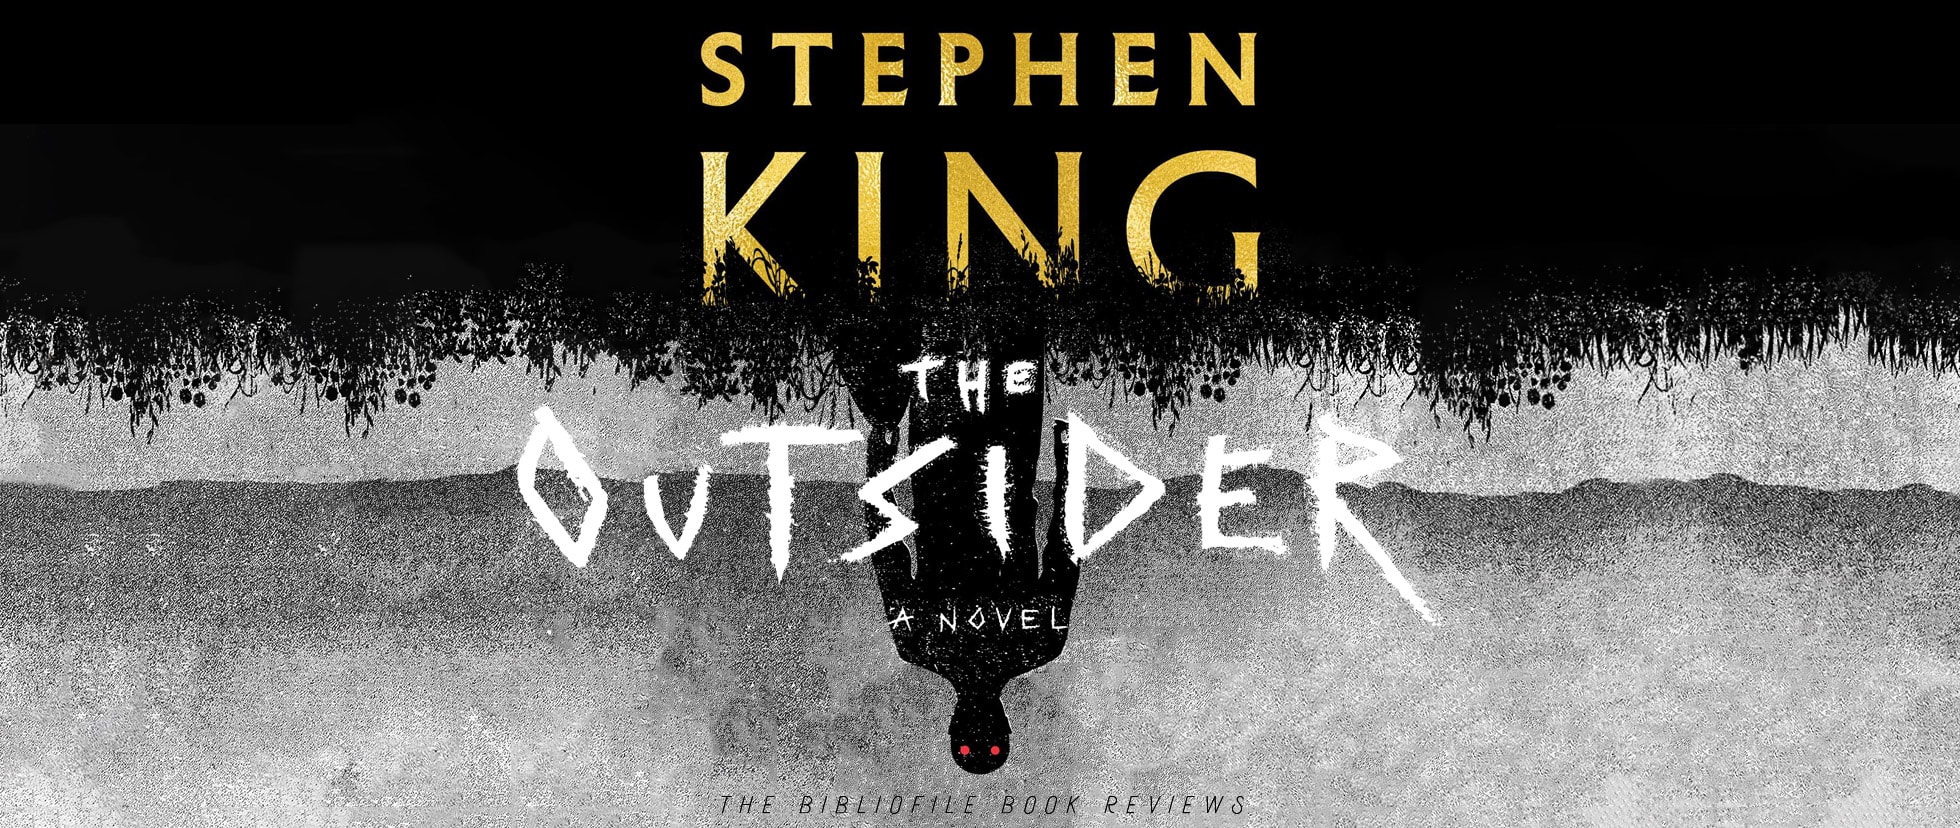 the outsider stephen king full book